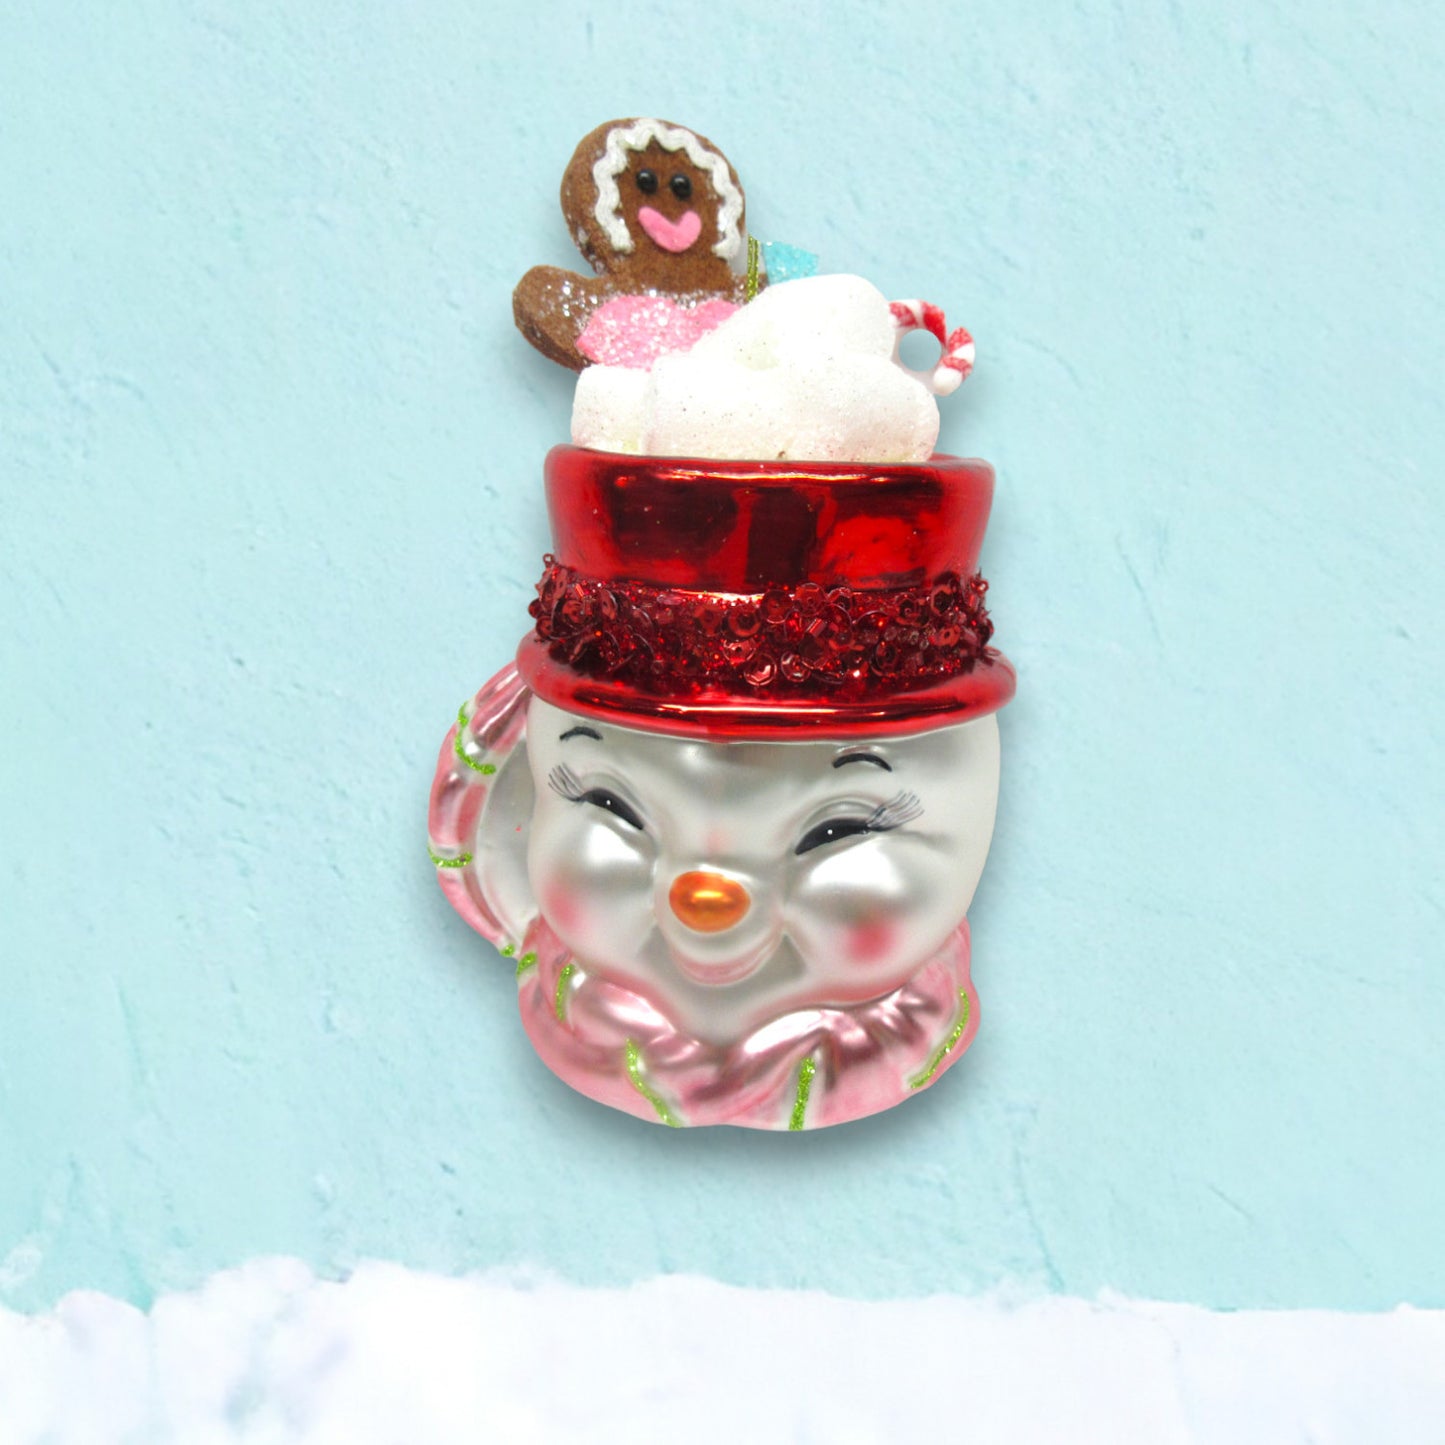 December Diamonds Fun At The North Pole Snowman Cocoa Mug Ornament